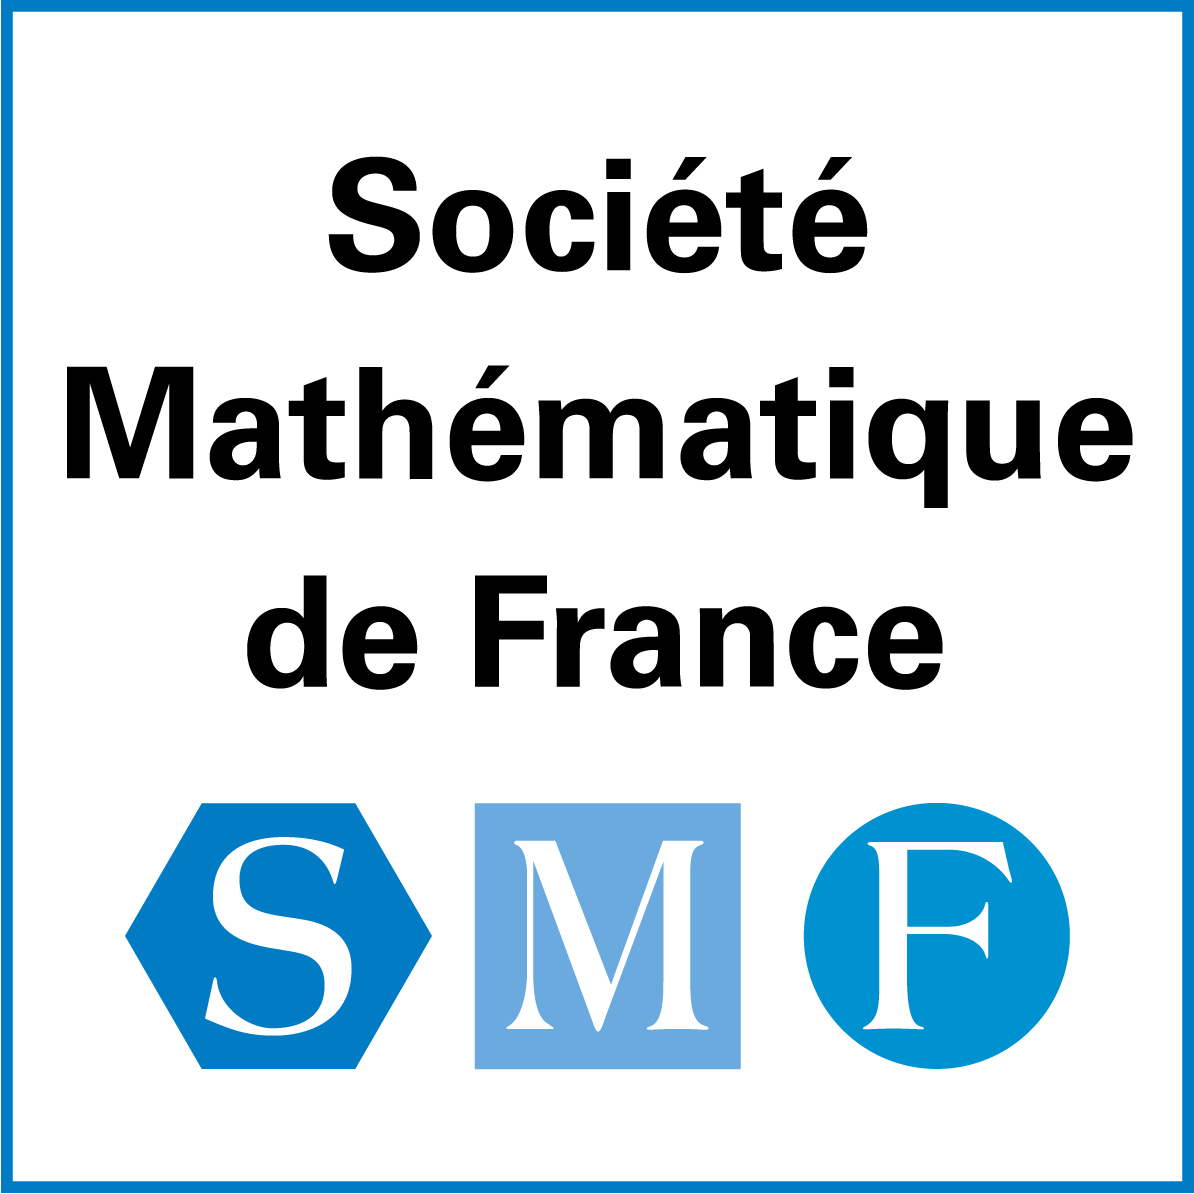 smf-logo